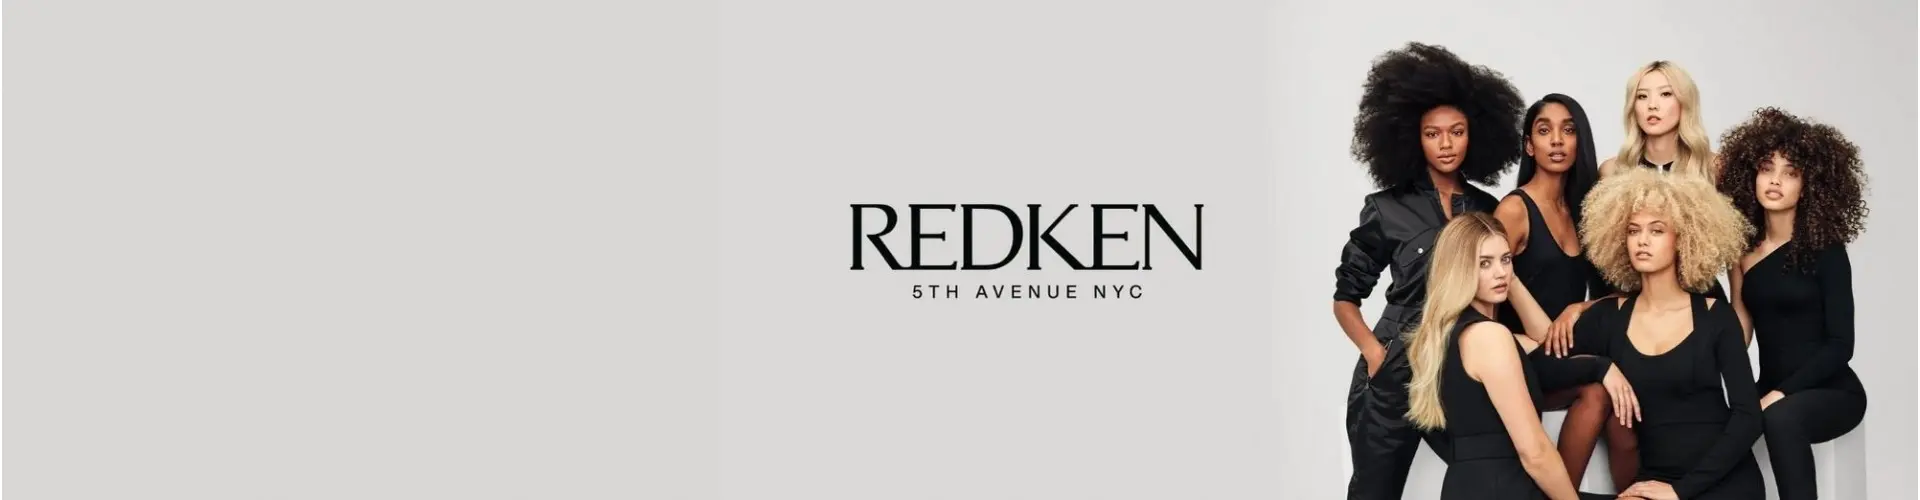 Redken em -20% com o código promocional: "REDKEN"